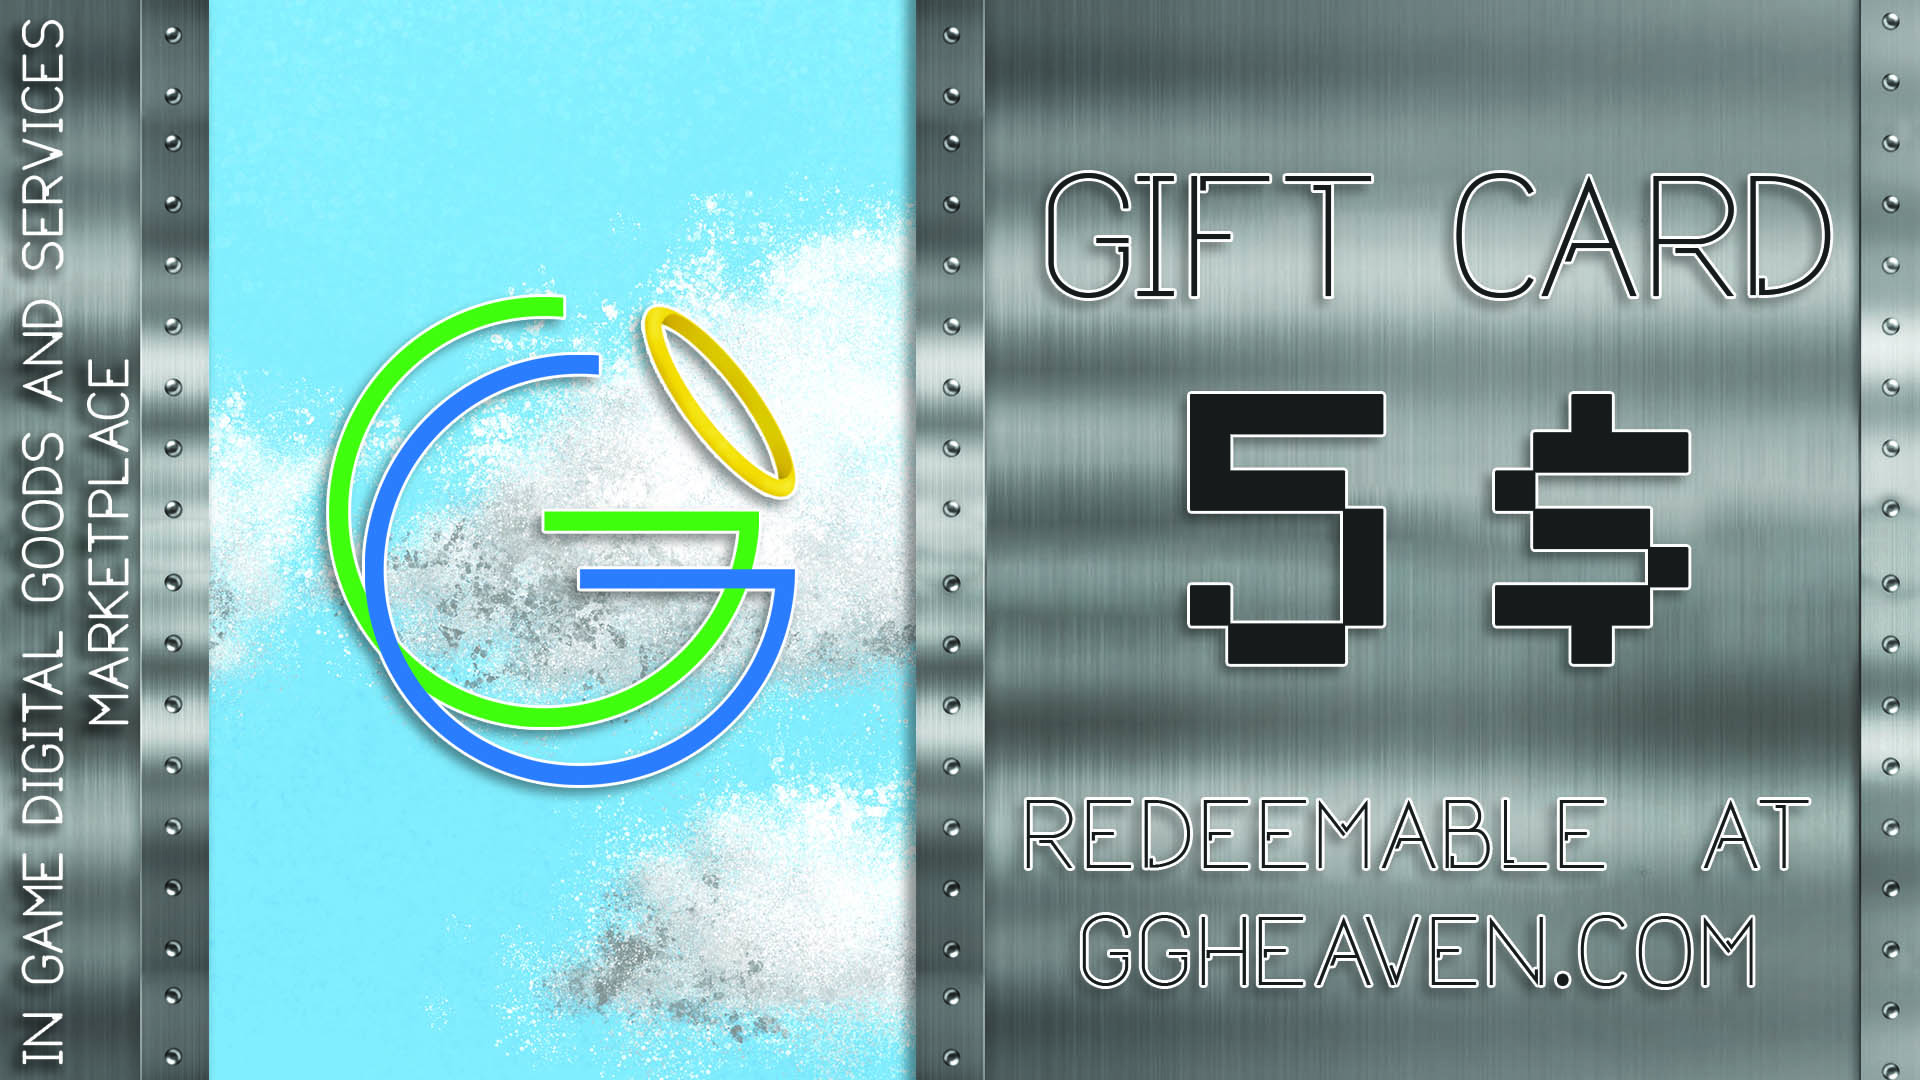 GGHeaven.com 5$ Gift Card 6.27 $